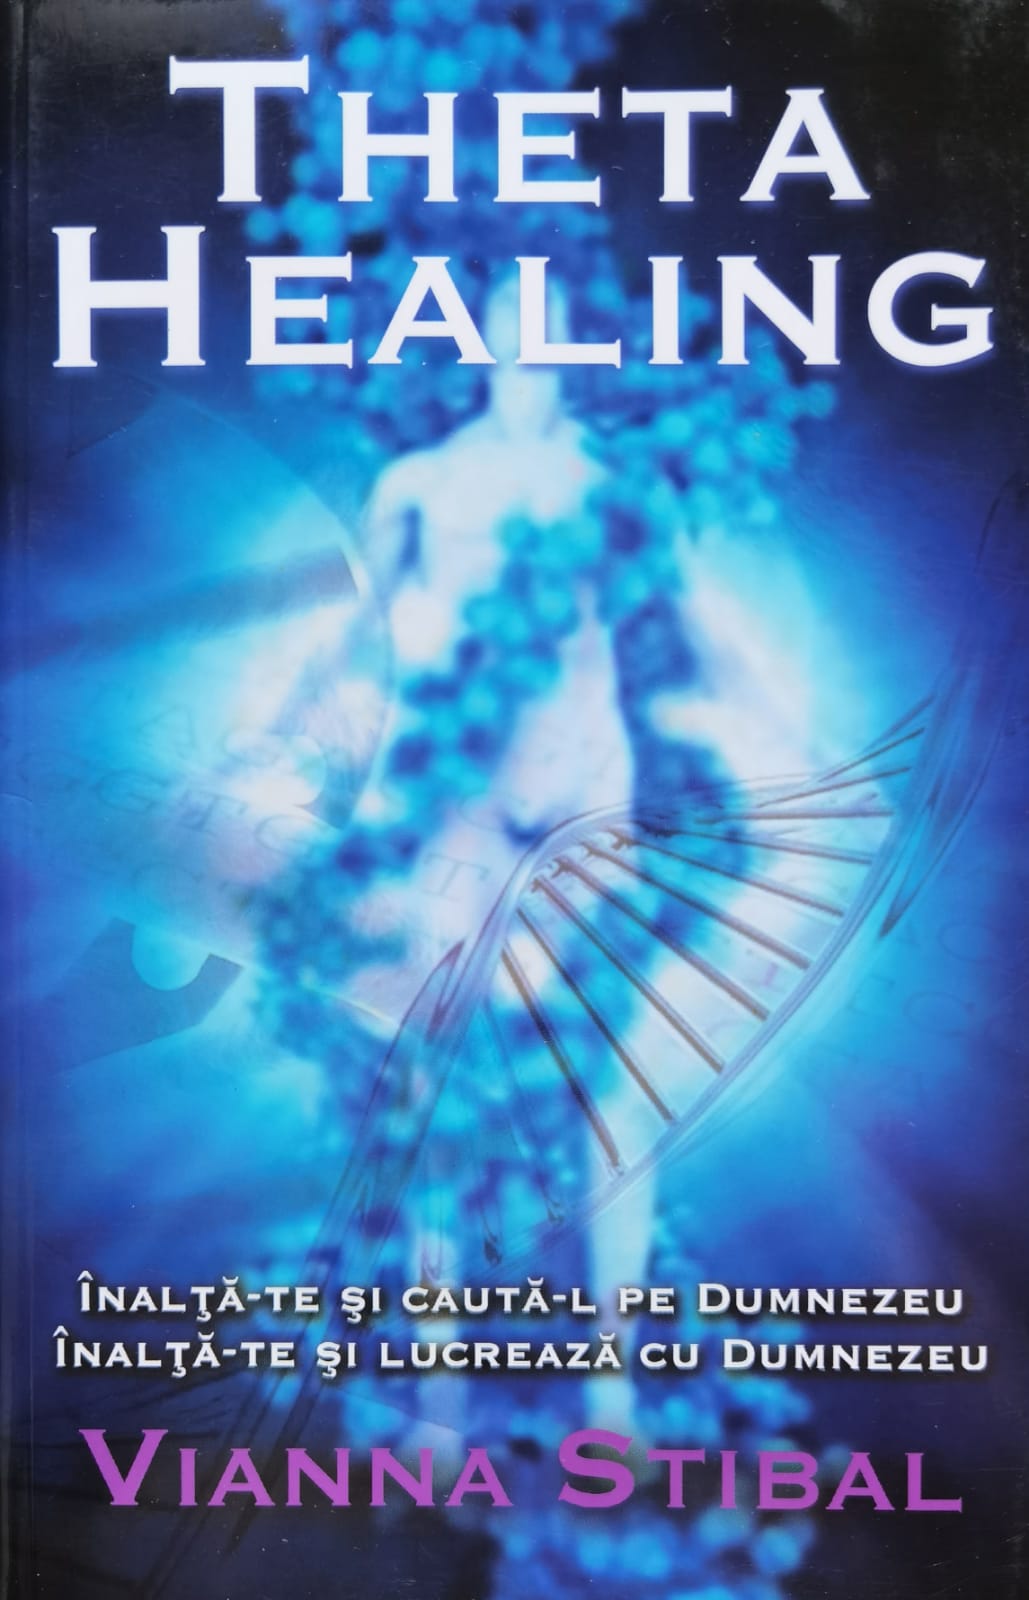 theta healing inalta-te si cauta-l pe dumnezeu, inalta-te si lucreaza cu dumnezeu                    vianna stibal                                                                                       